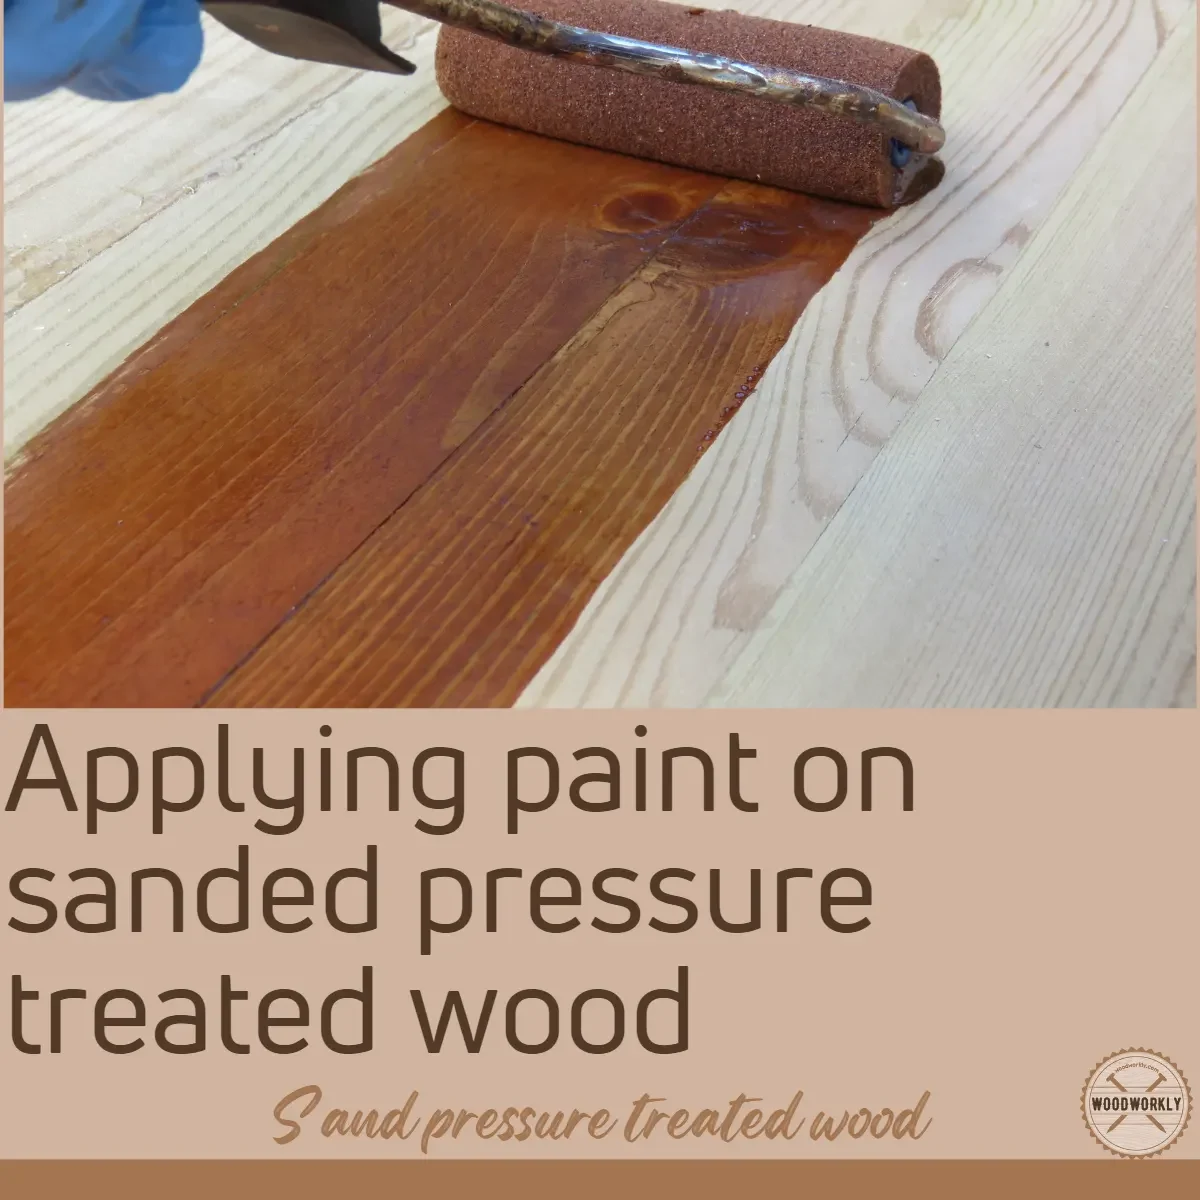 Applying paint on sanded pressure treated wood